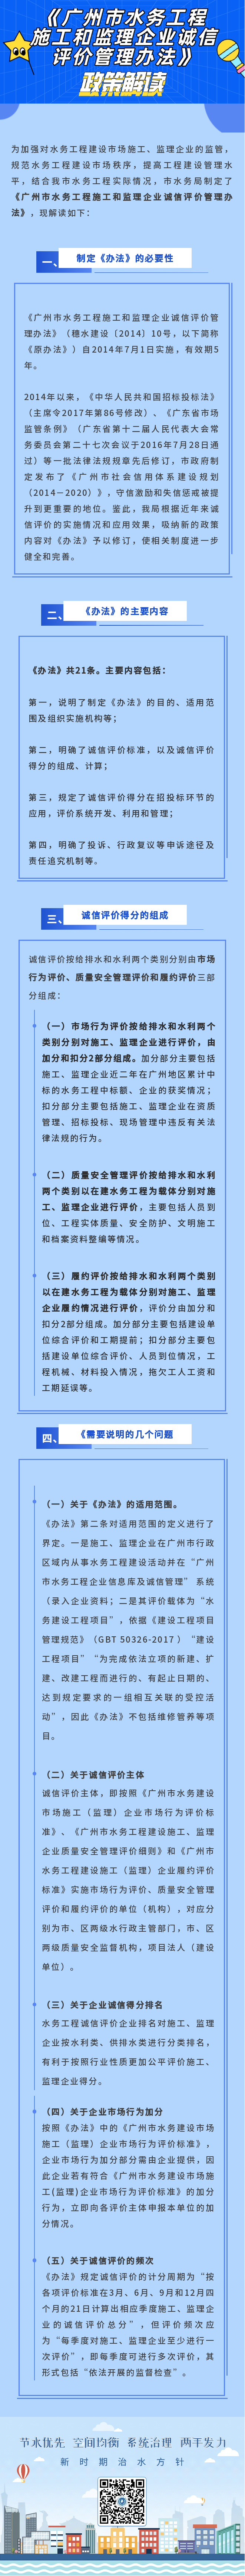 图解-《广州市水务工程施工和监理企业诚信评价管理办法》政策解读.jpg